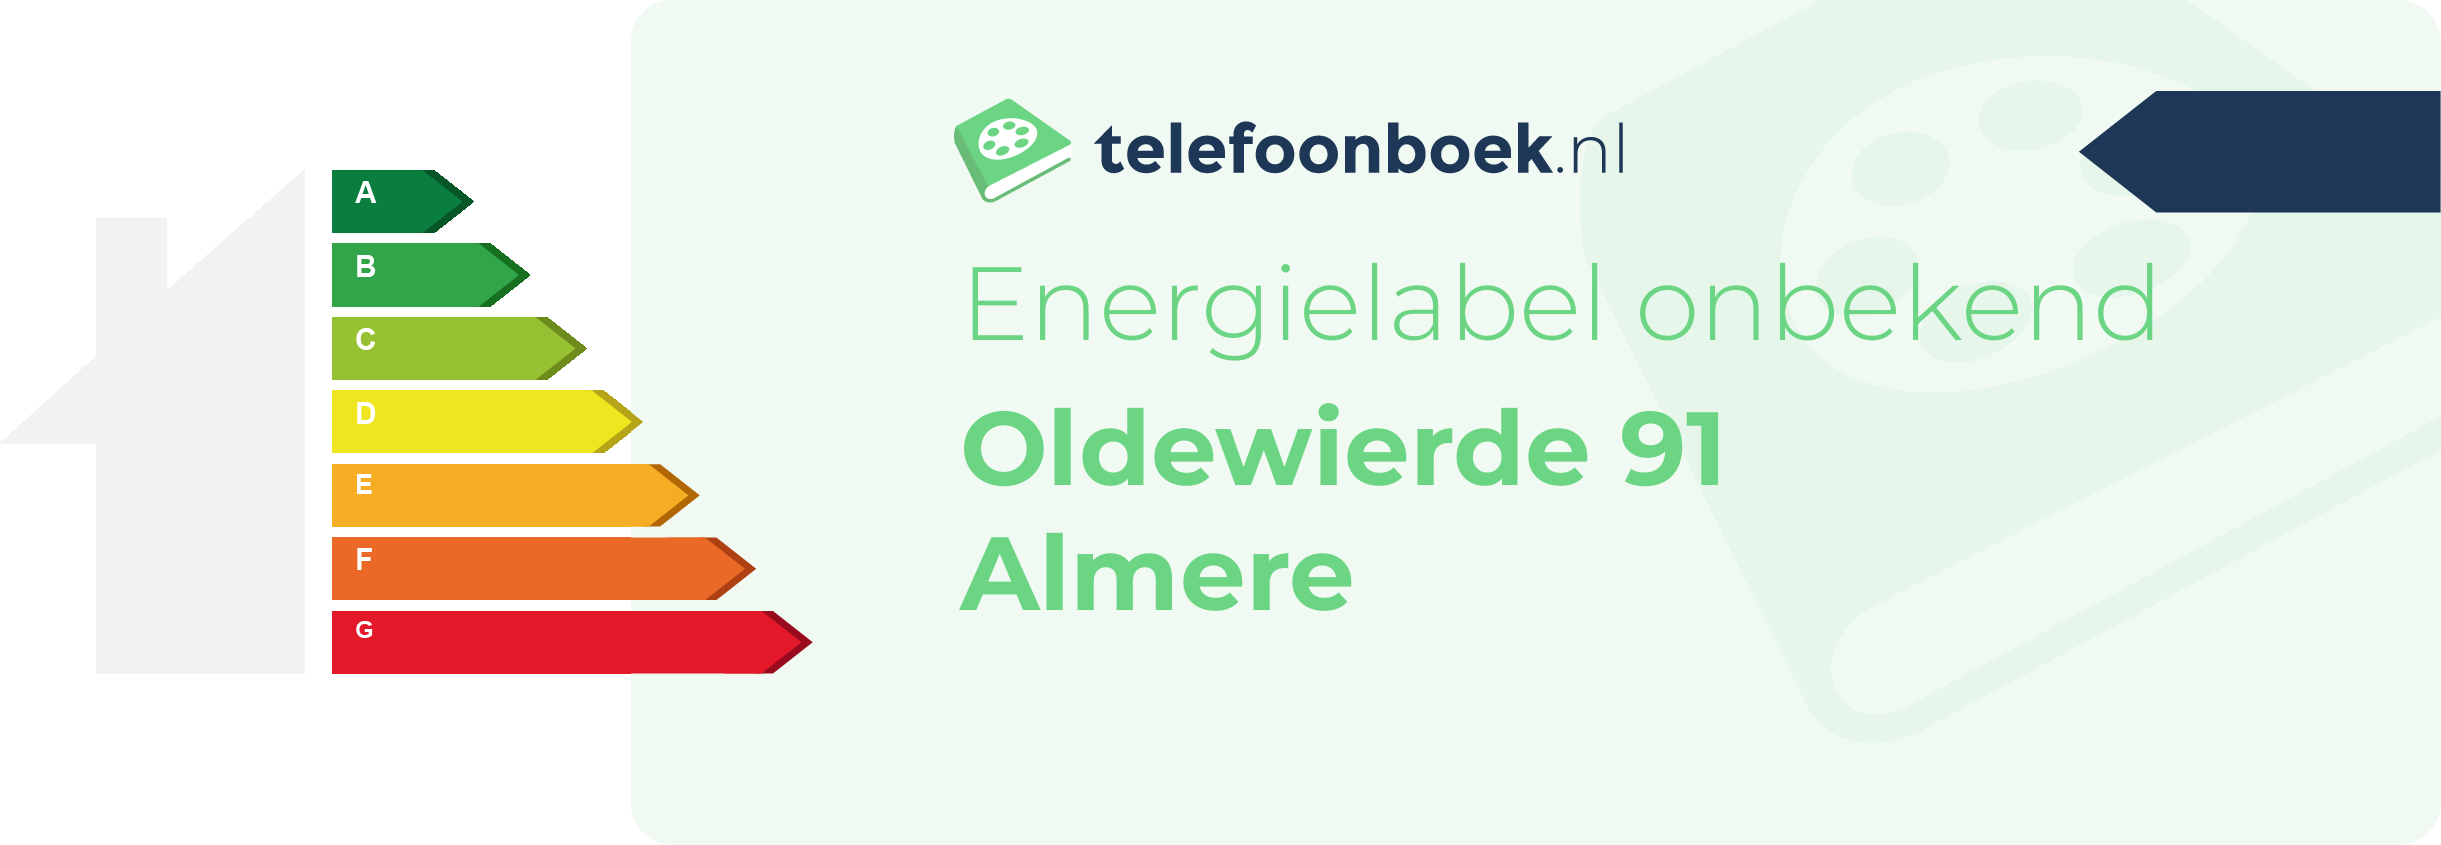 Energielabel Oldewierde 91 Almere